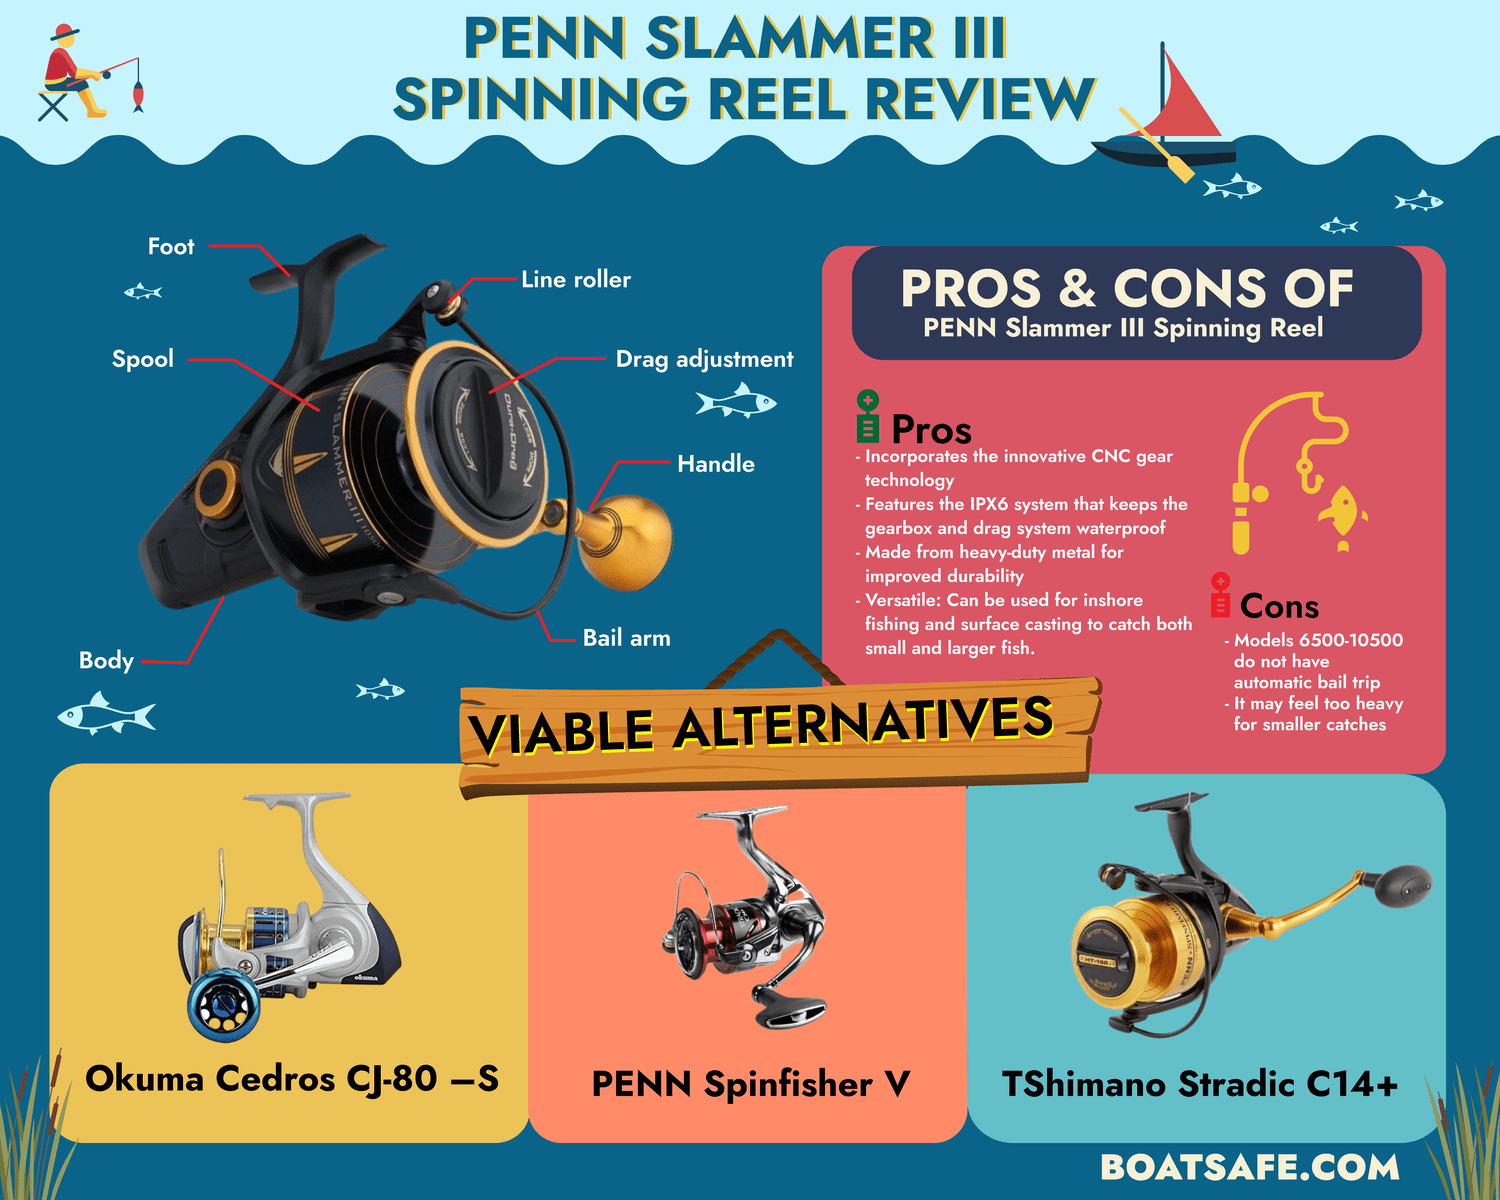 Penn-Slammer III